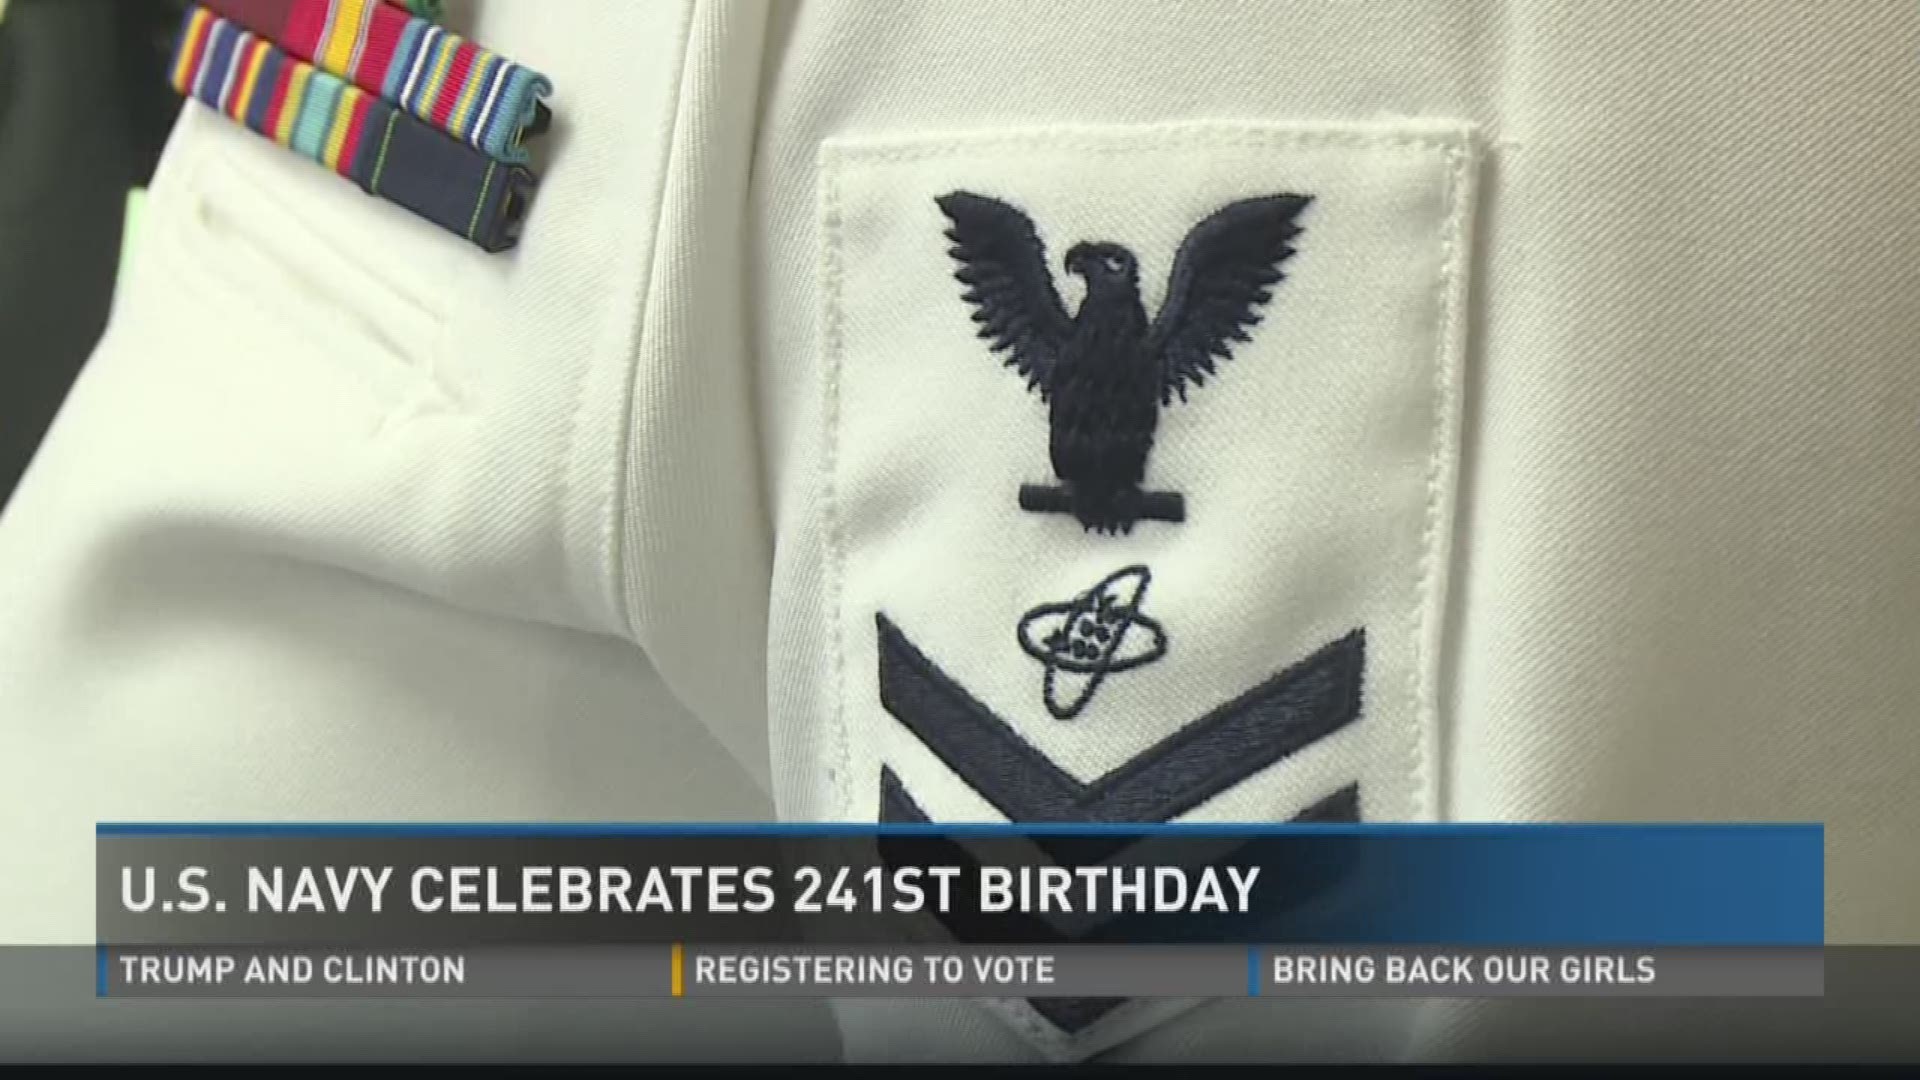 U.S. Navy celebrates 241st birthday.